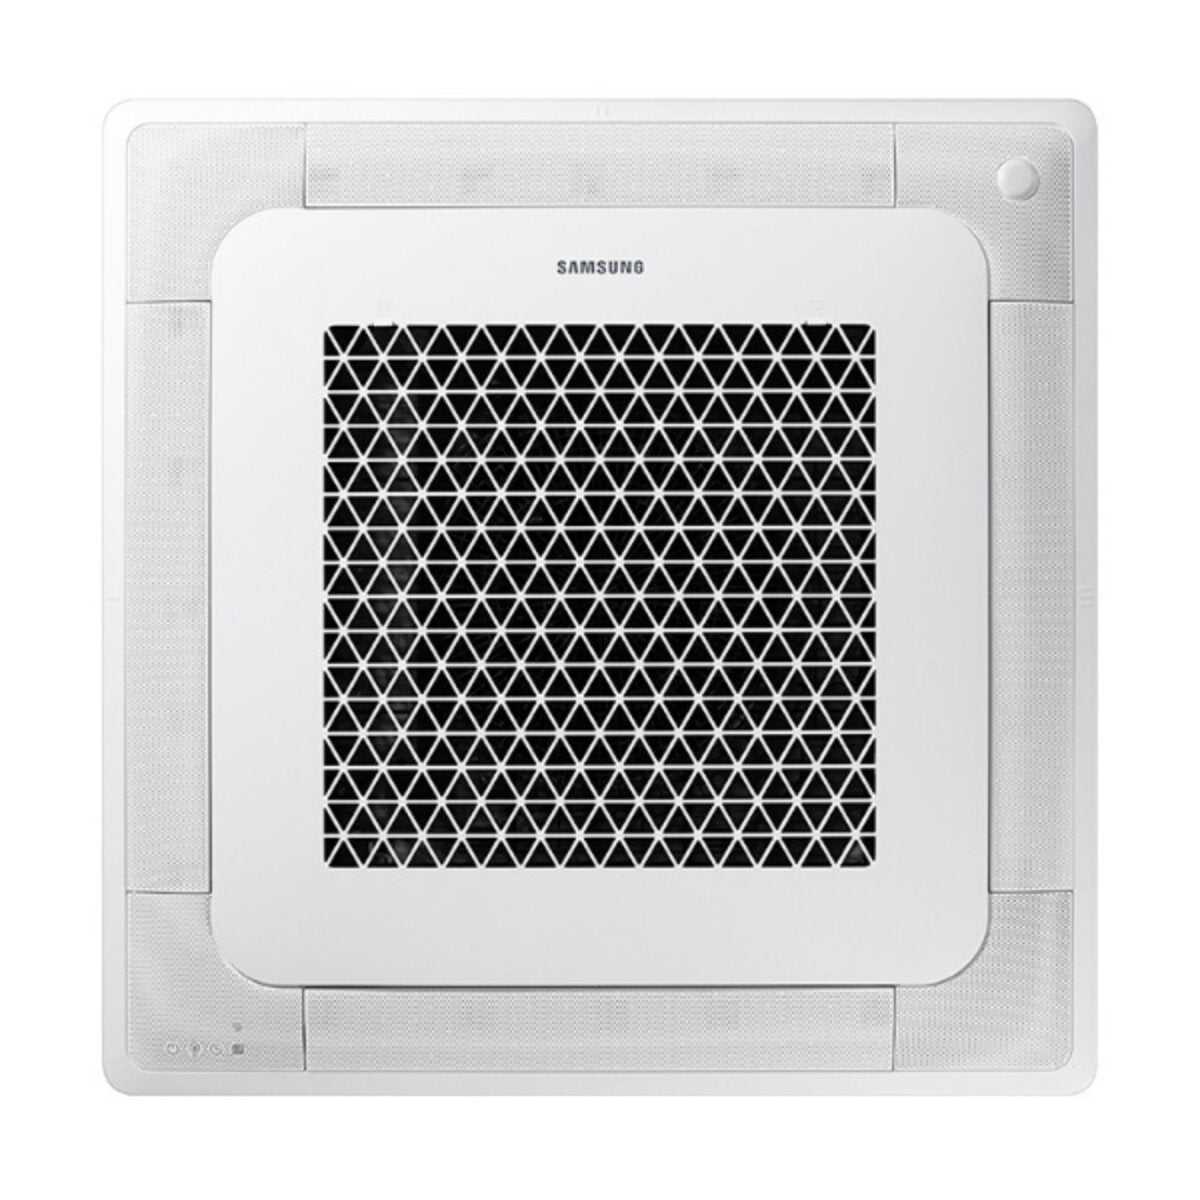 Samsung Klimaanlage Windfree 4-Wege Trial Split 9000 + 12000 + 12000 BTU Inverter A++ Außengerät 6,8 kW